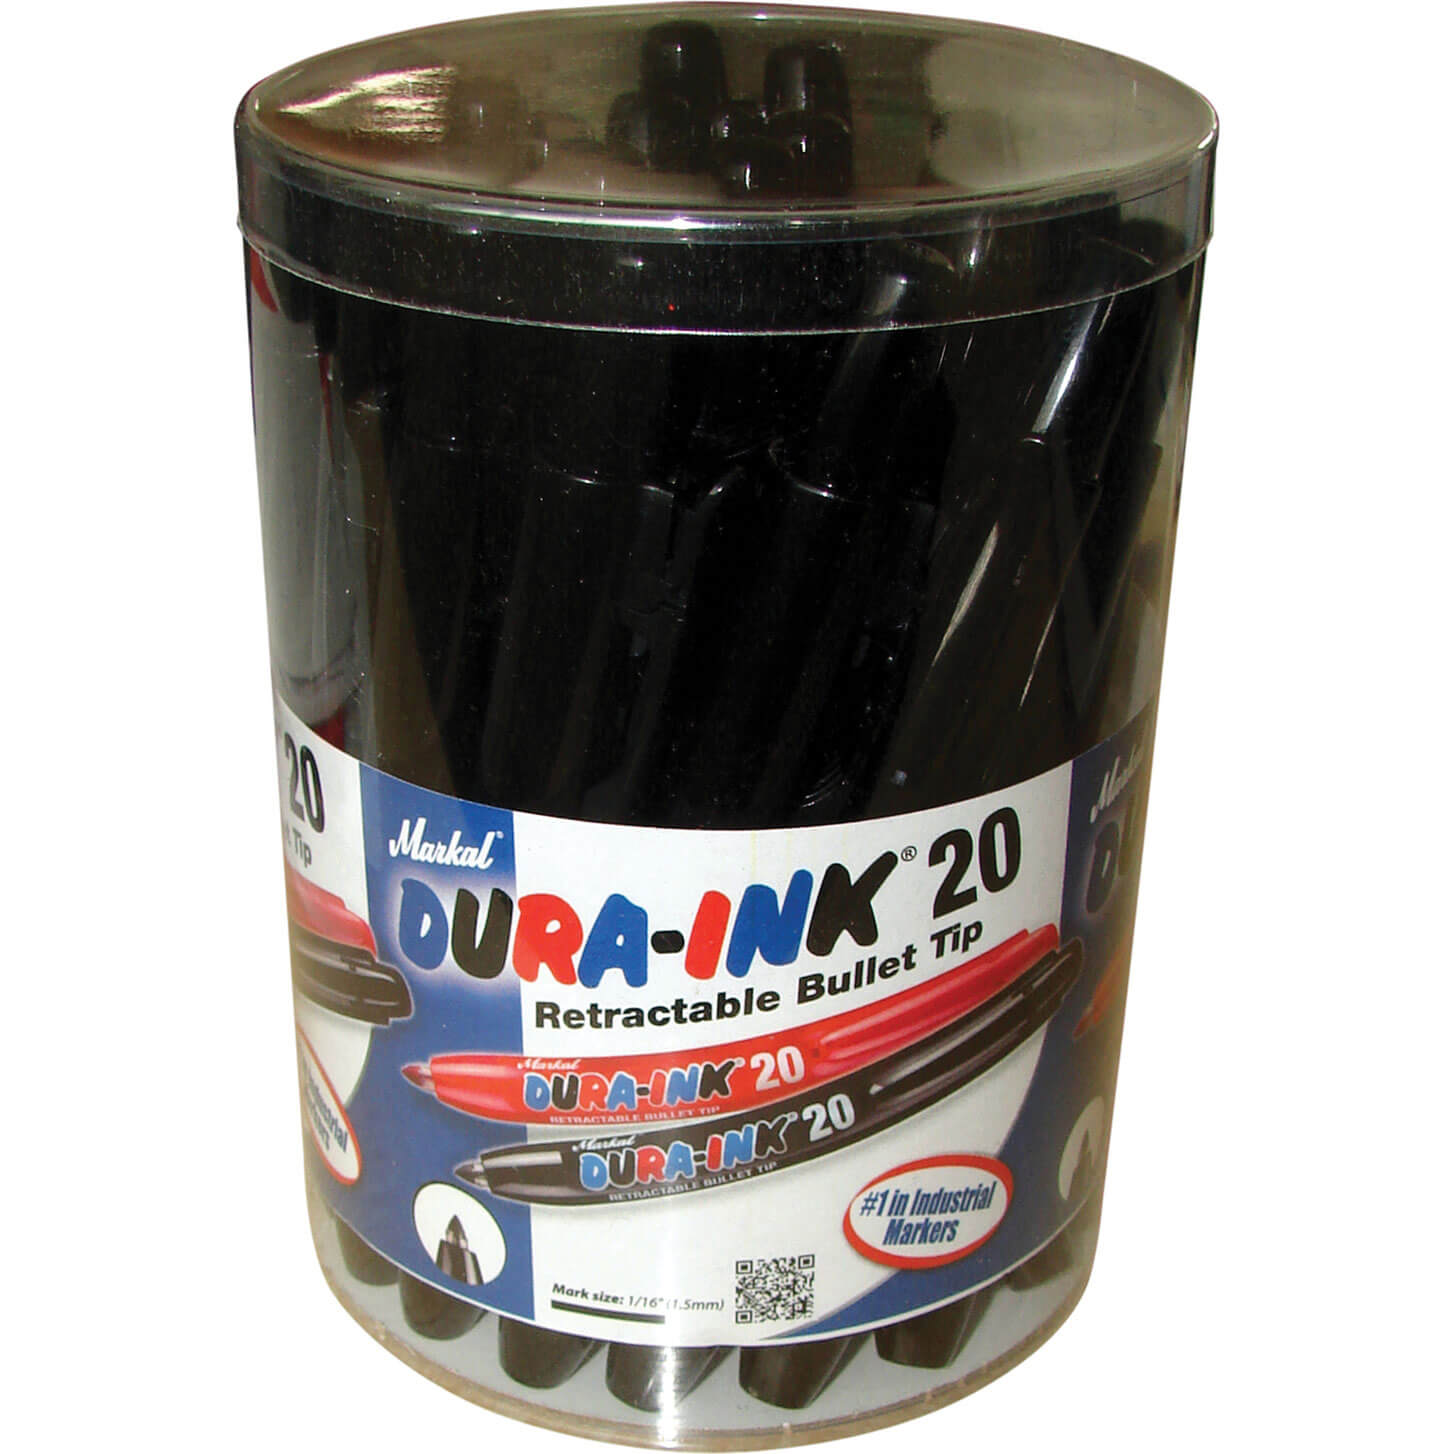 Image of Markal Dura Ink 20 Retractable Fine Bullet Tip Permanent Marker Pen Black Pack of 24